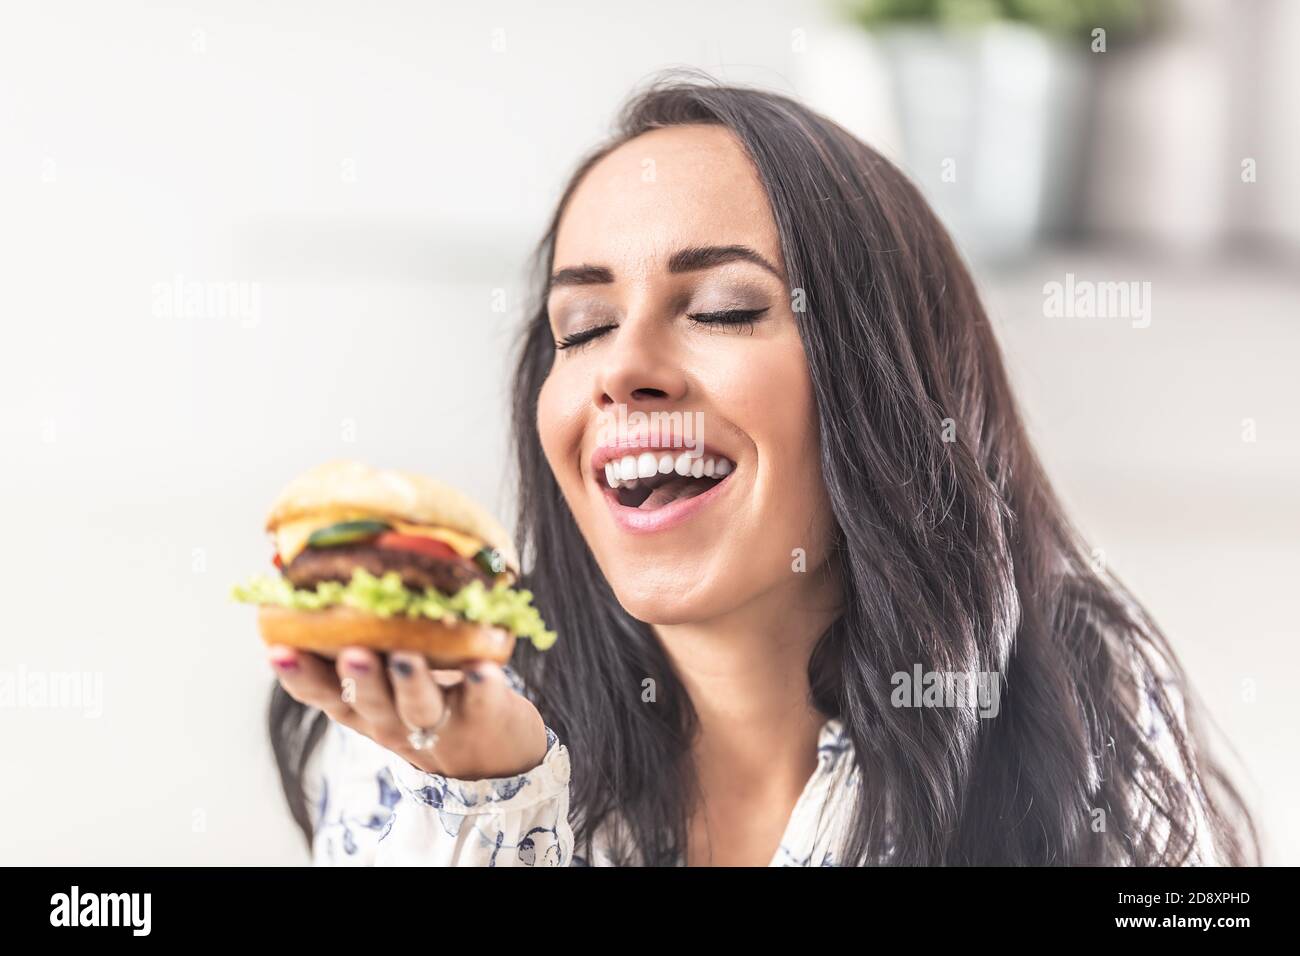 Mädchen genießt den Geruch eines frisch gekochten Burger in der Hand. Stockfoto